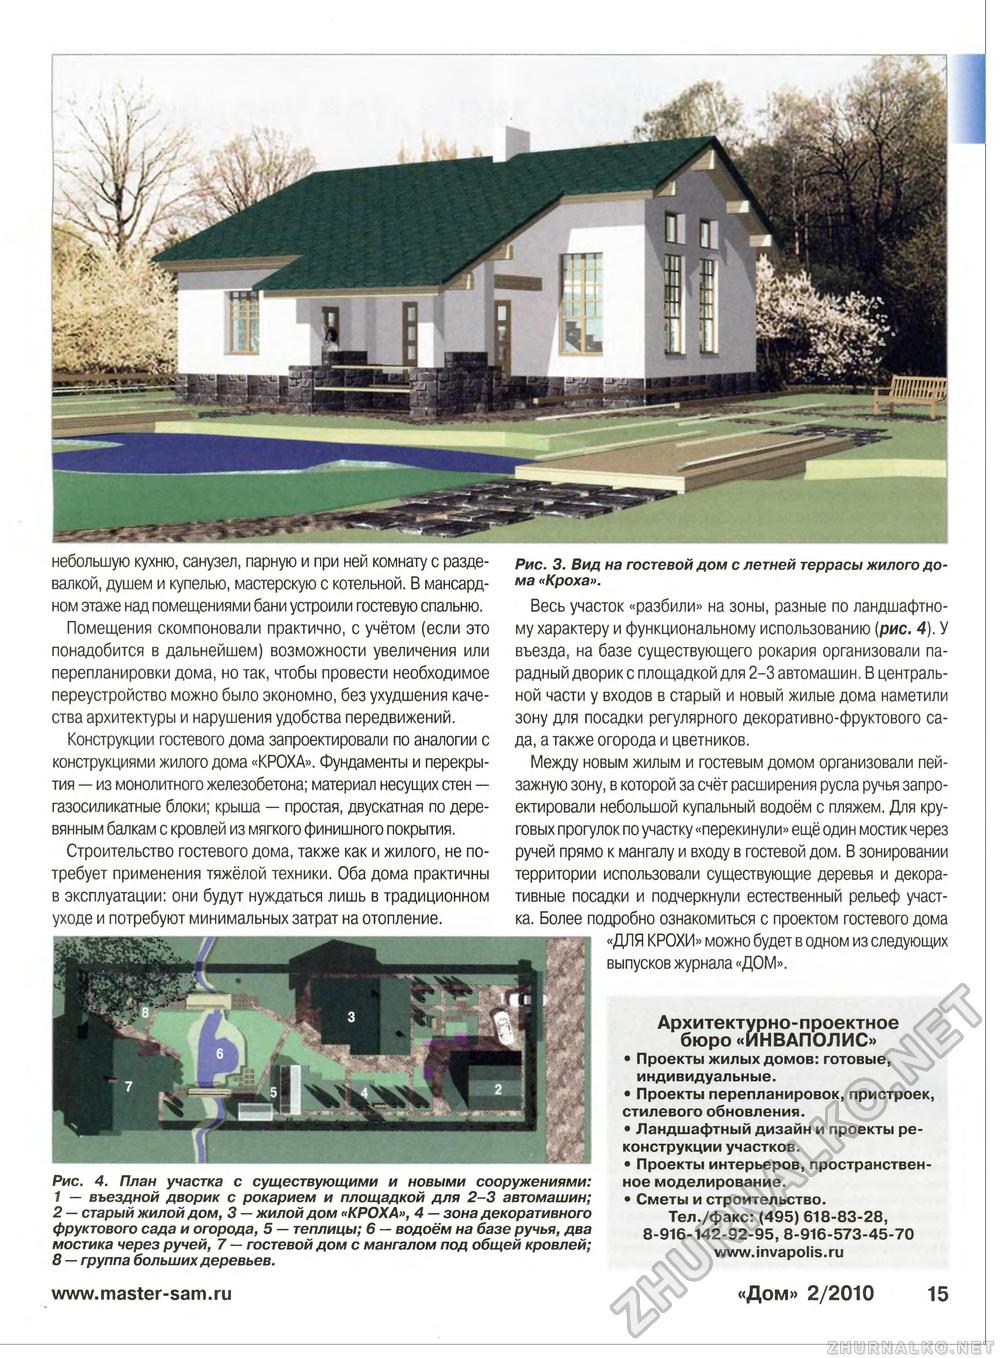 Дом 2010-02, страница 15